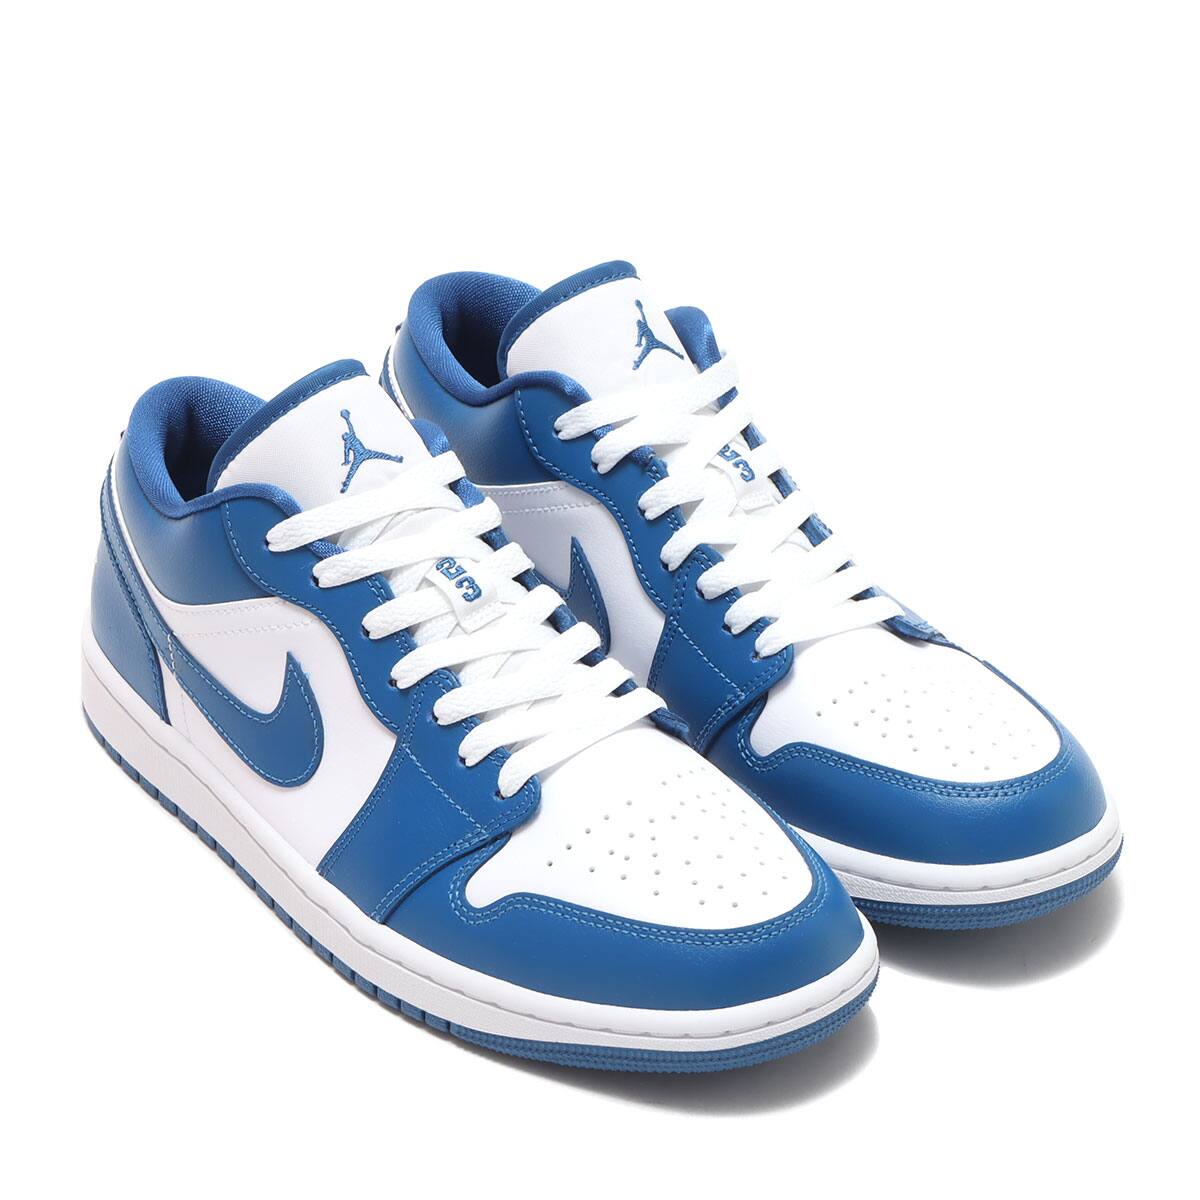 Nike WMNS Air Jordan 1 Low "Marina Blue